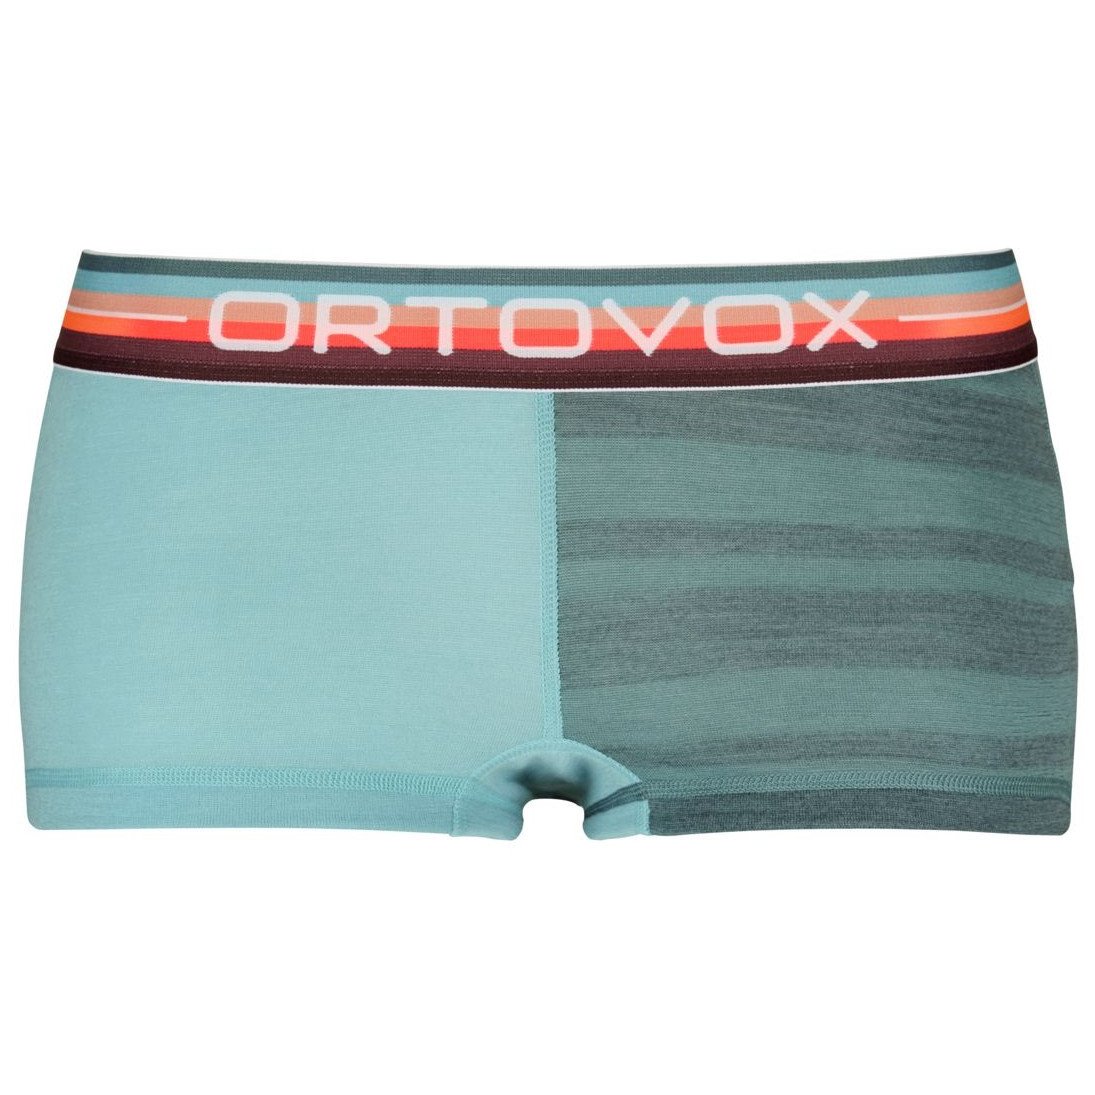 Dámské funkční kalhotky Ortovox 185 Rock'N'Wool Hot Pants W Velikost: S / Barva: růžová